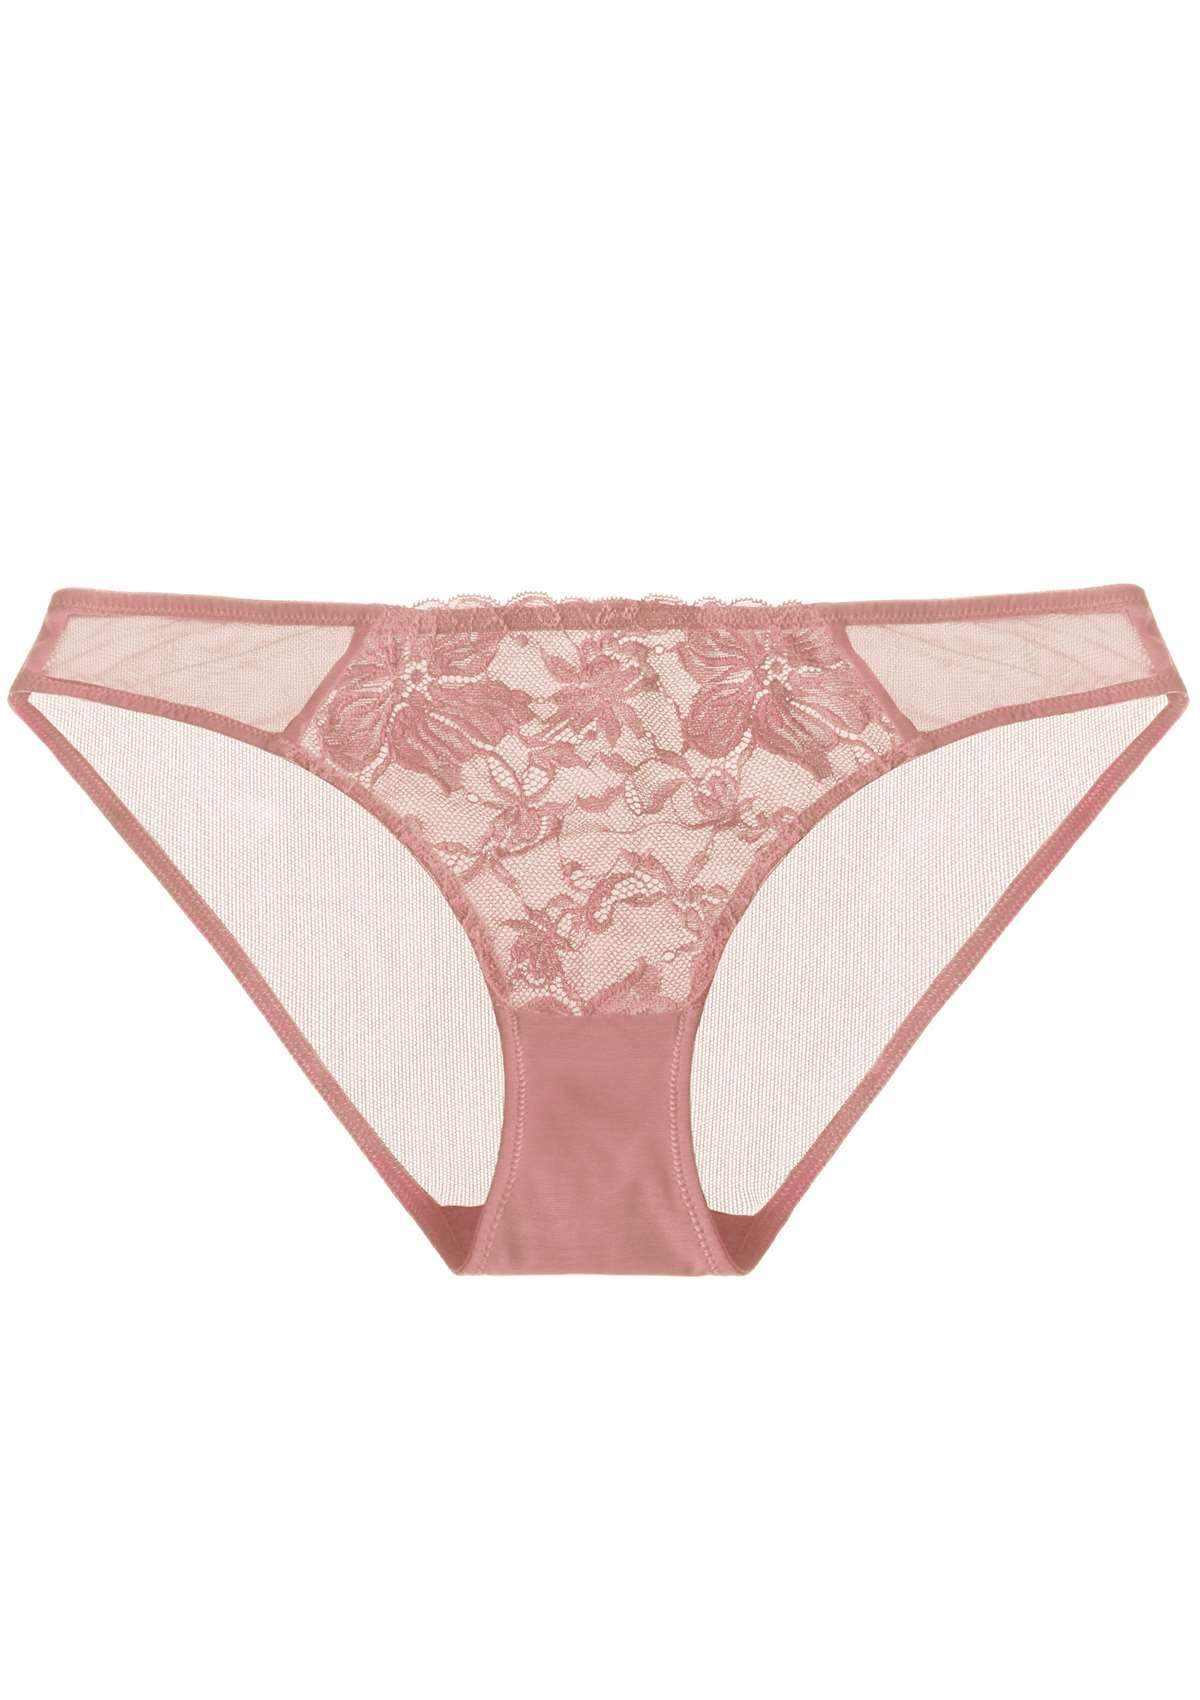 HSIA Breathable Sexy Feminine Lace Mesh Bikini Underwear - M / Red